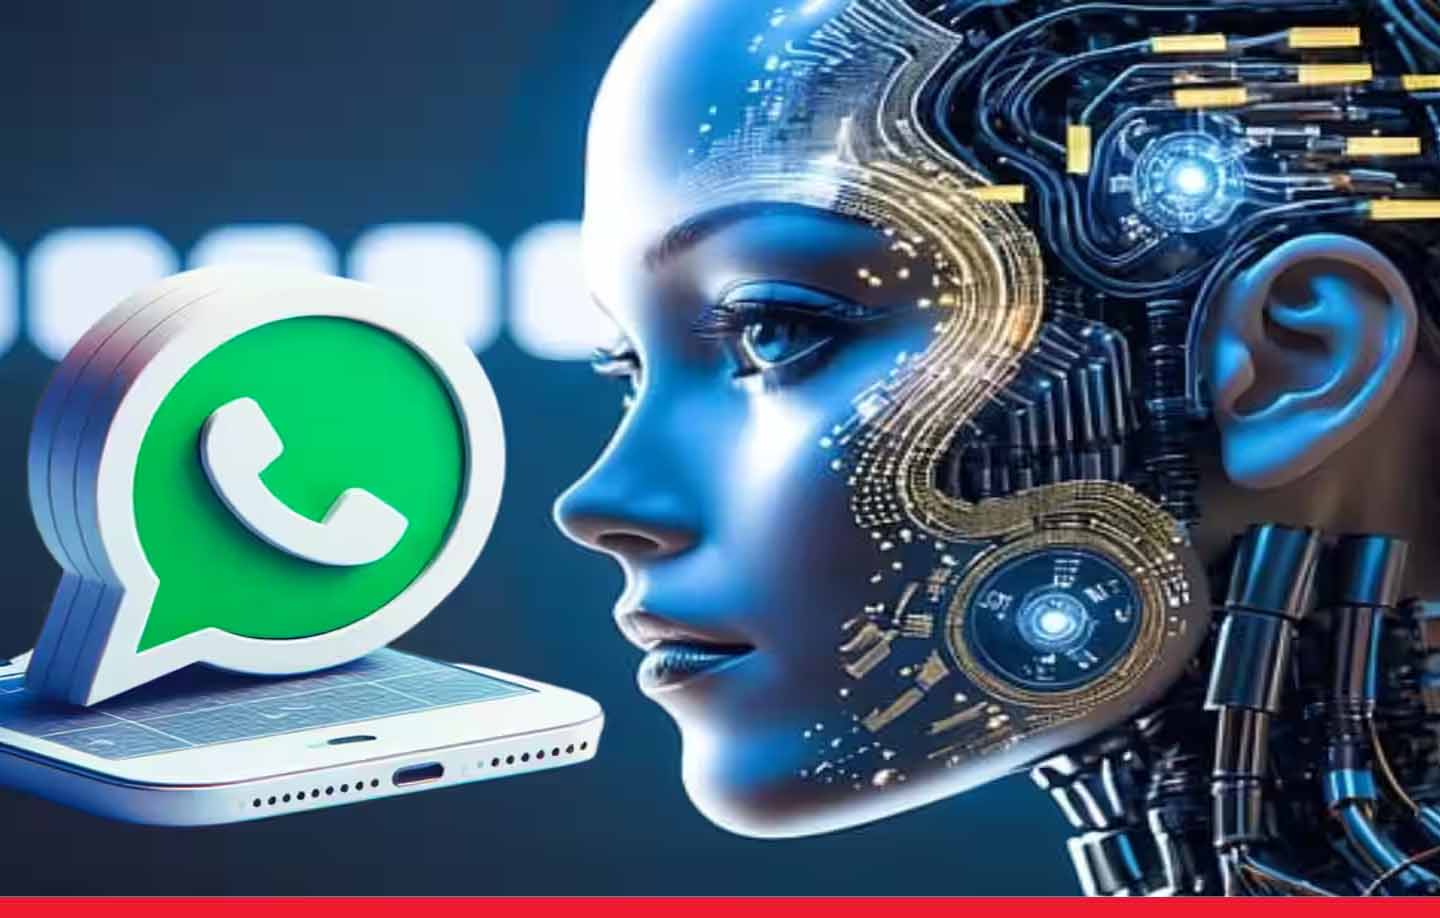 WhatsApp ने भारत में शुरू की मेटा AI चैटबॉट की टेस्टिंग